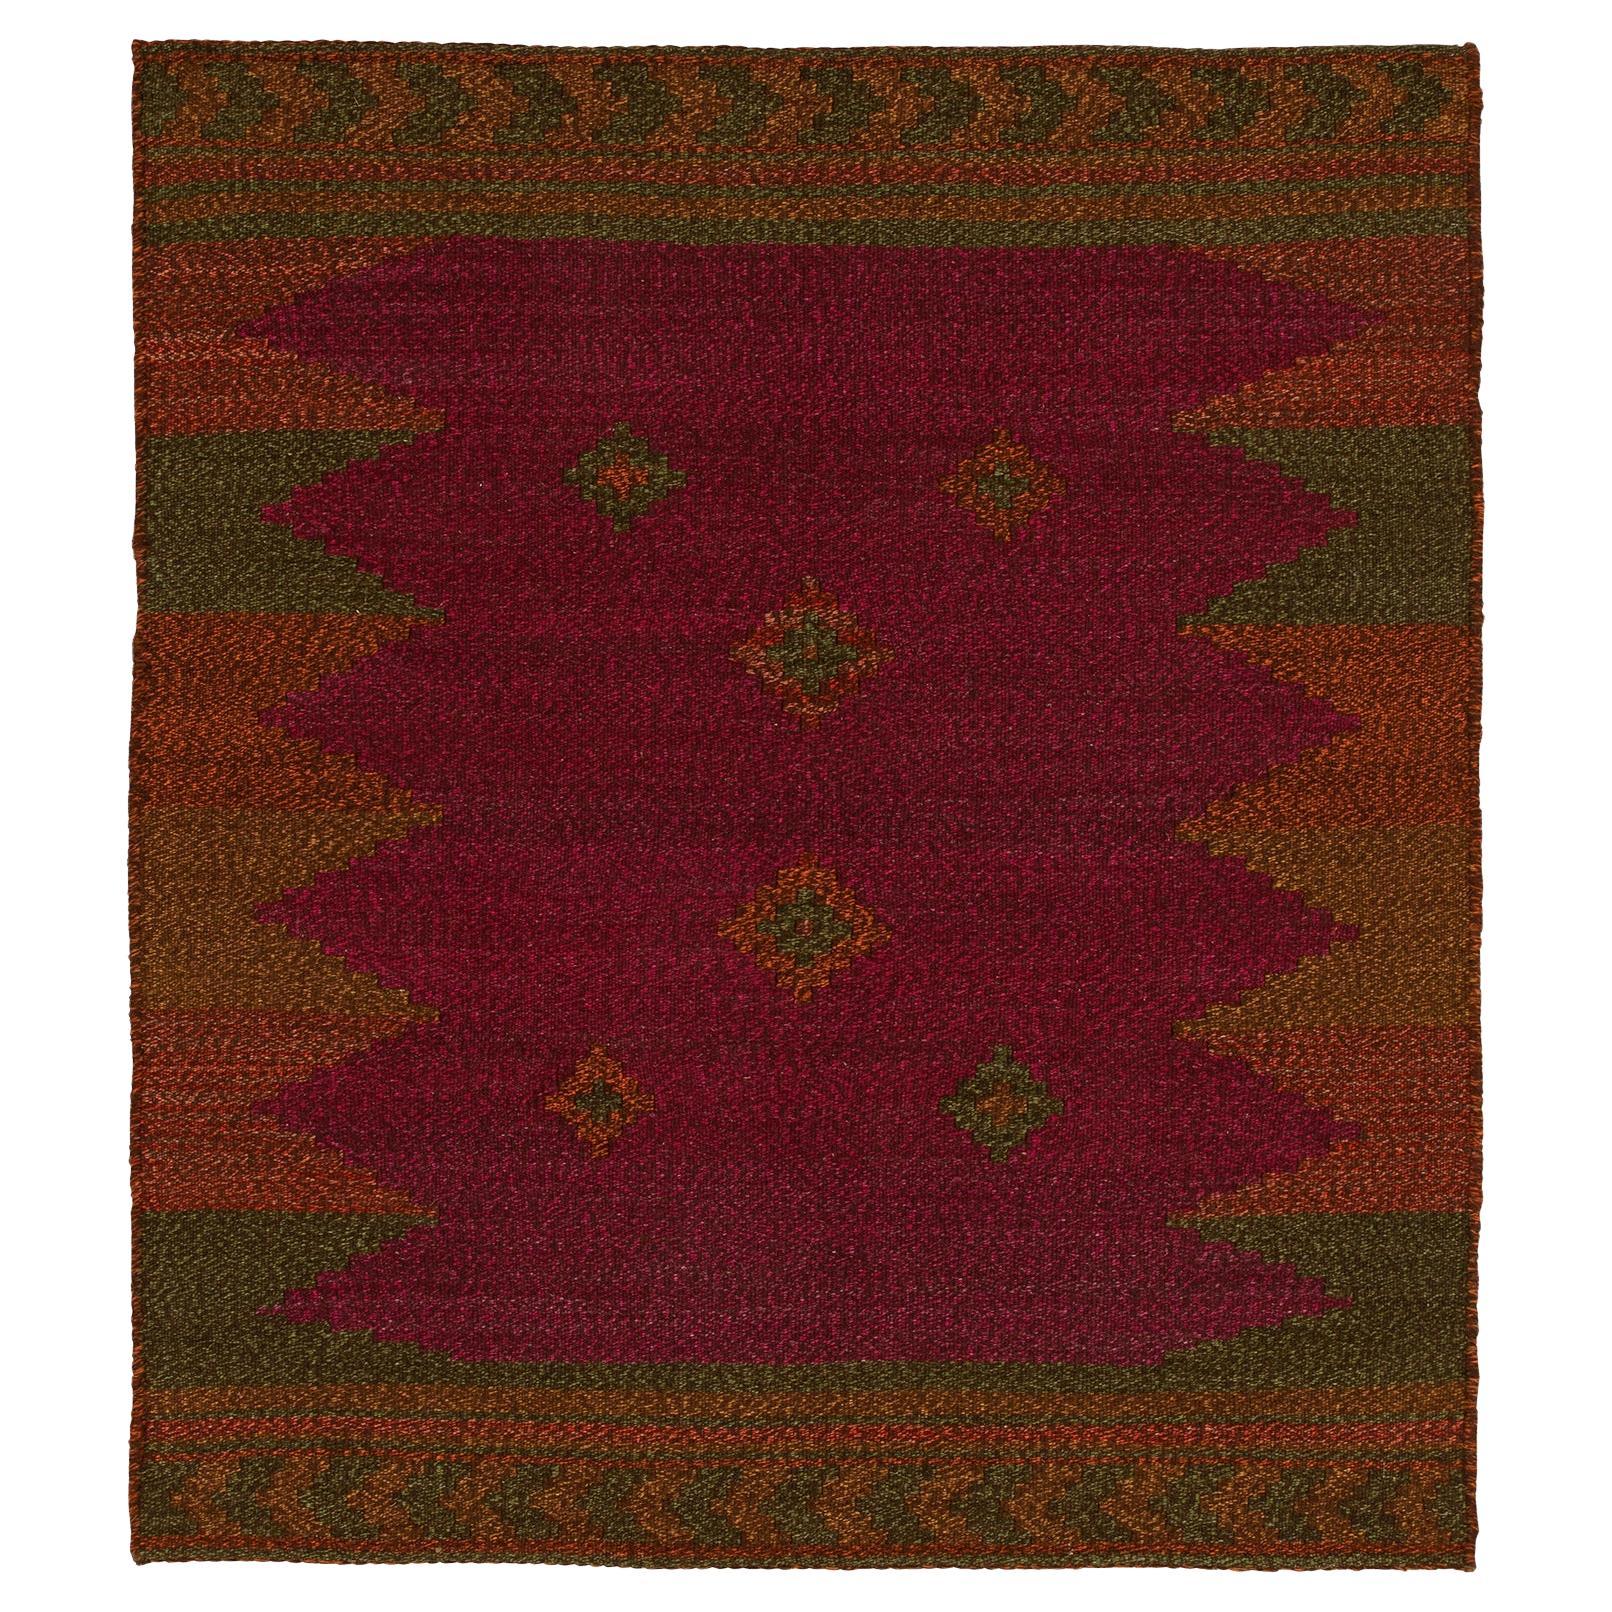 1980er Jahre Vintage Sofreh Kelim-Teppich in Maroon, Grün mit geometrischem Muster von Teppich & Kelim